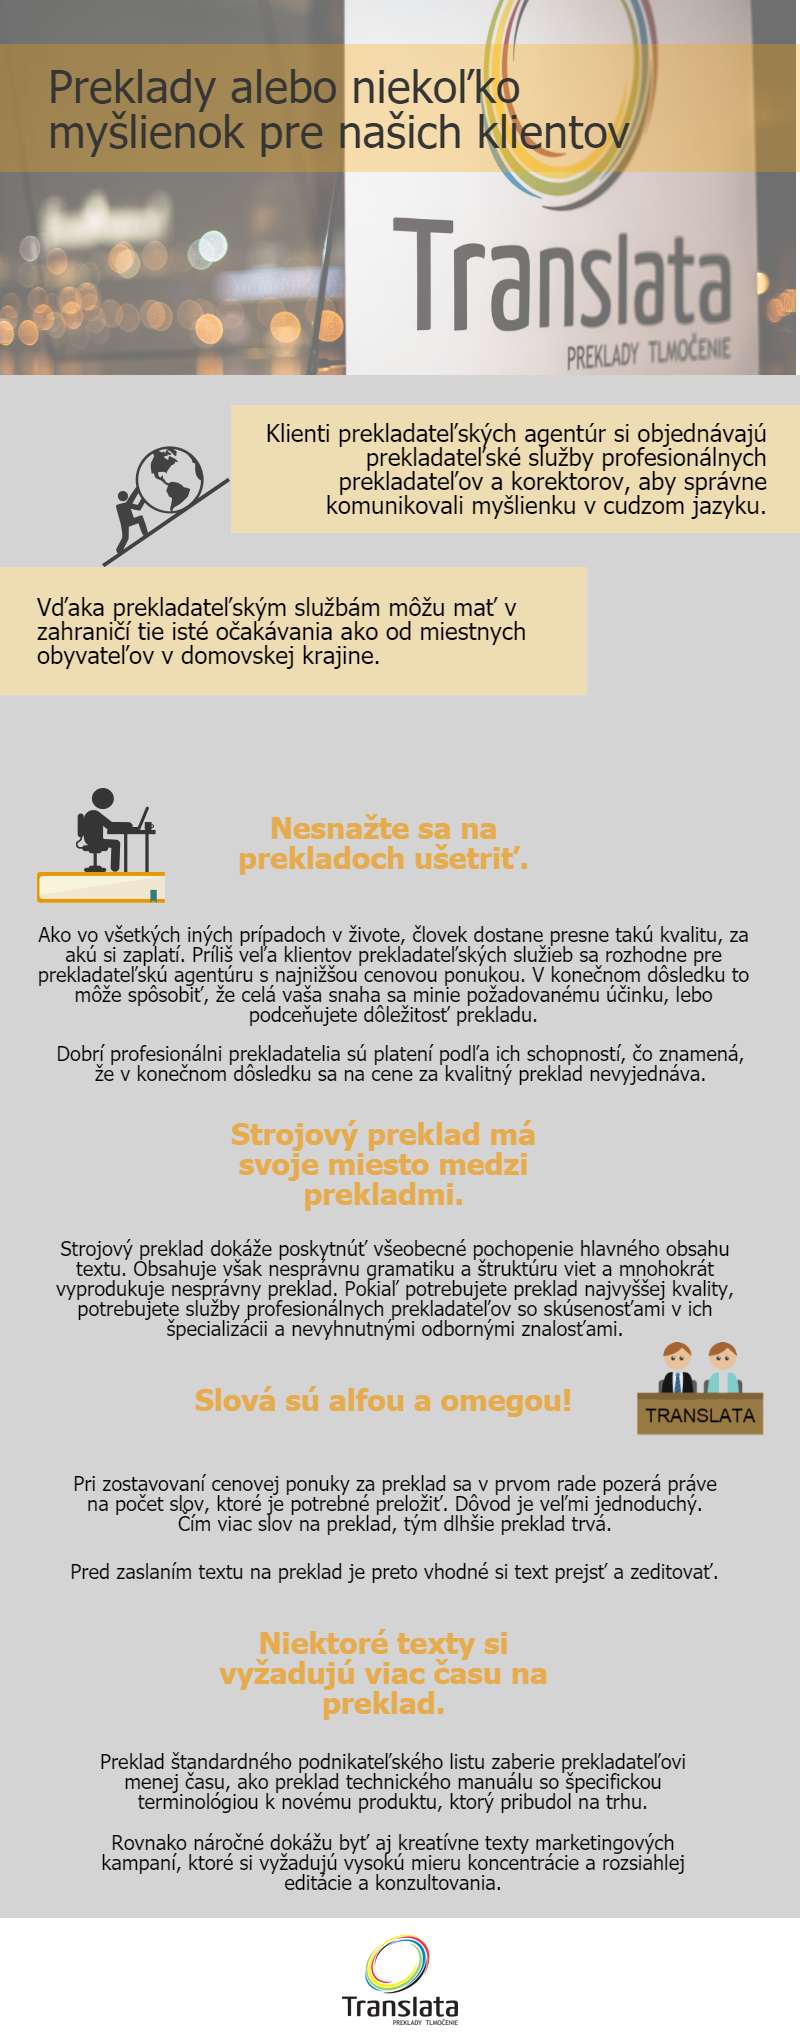 Preklady a myšlienky pre klientov Translaty infografika